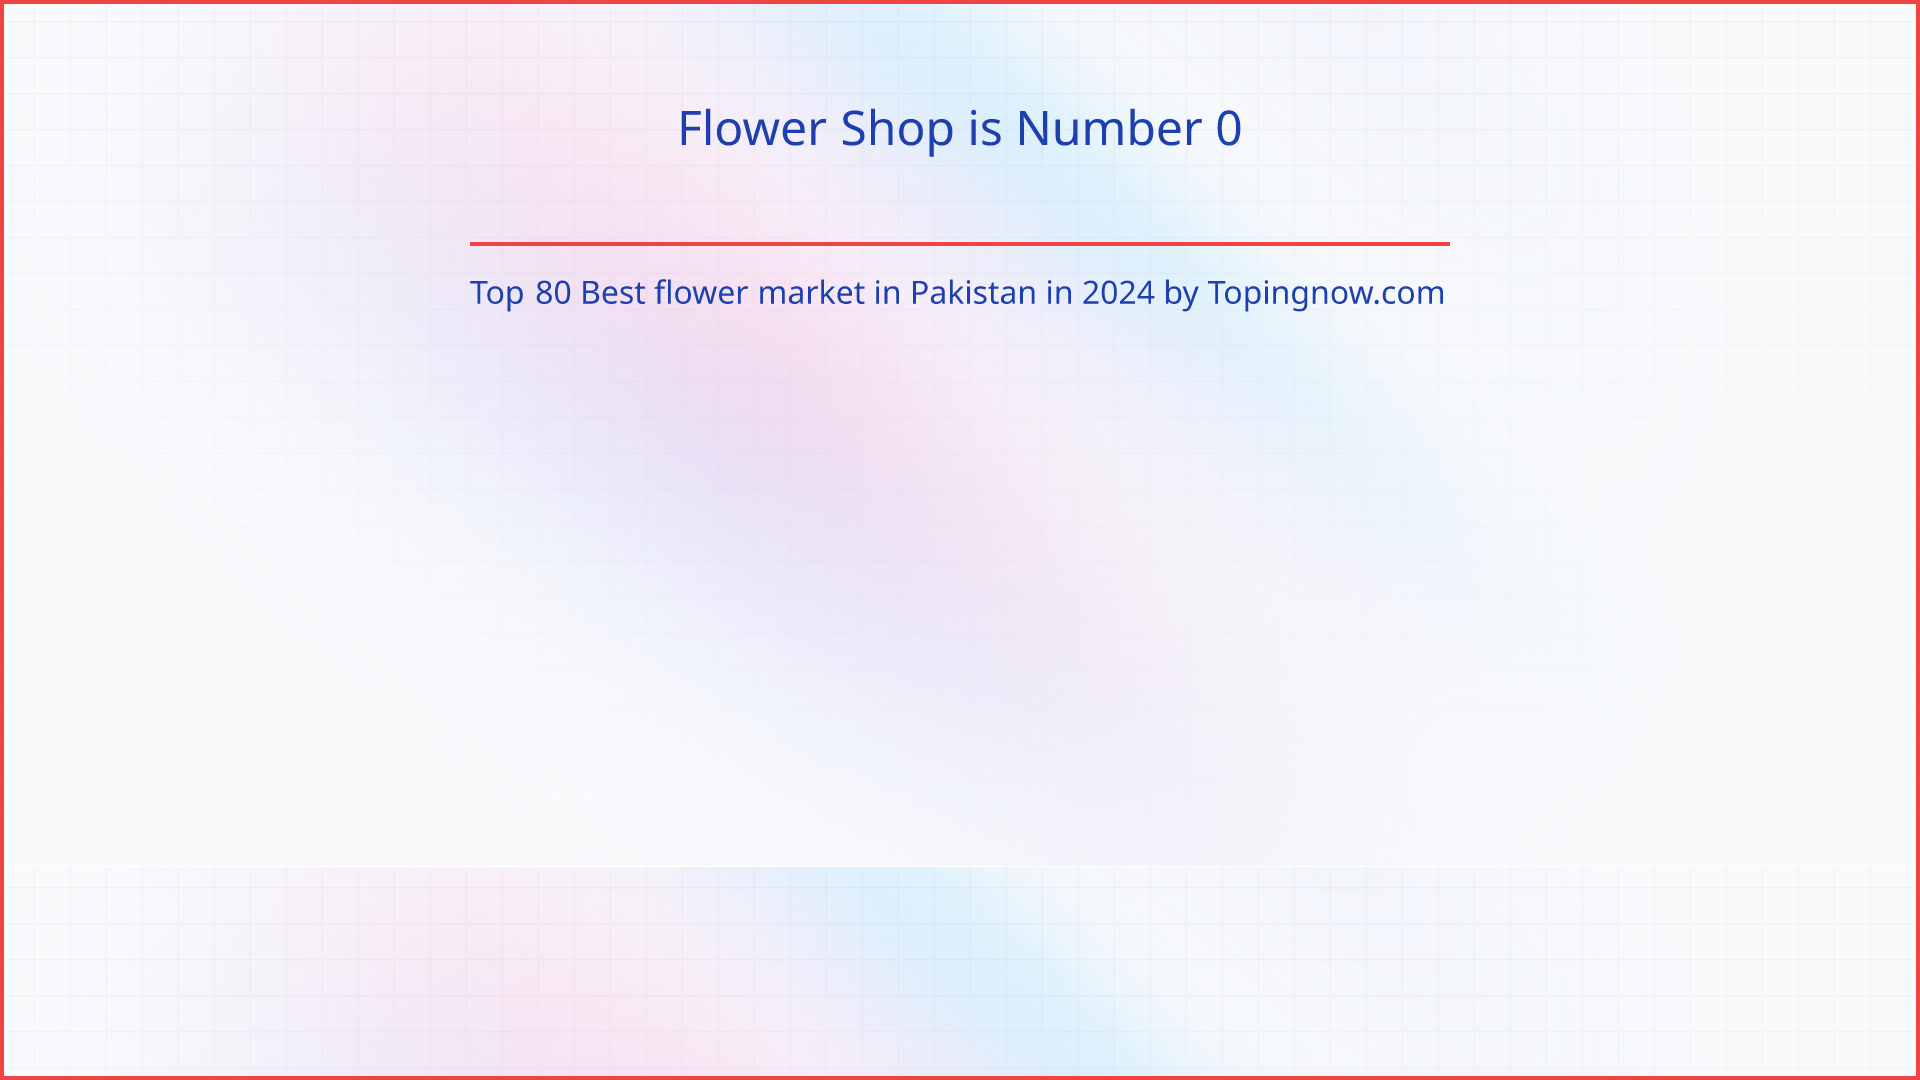 Flower Shop: Top 80 Best flower market in Pakistan in 2024